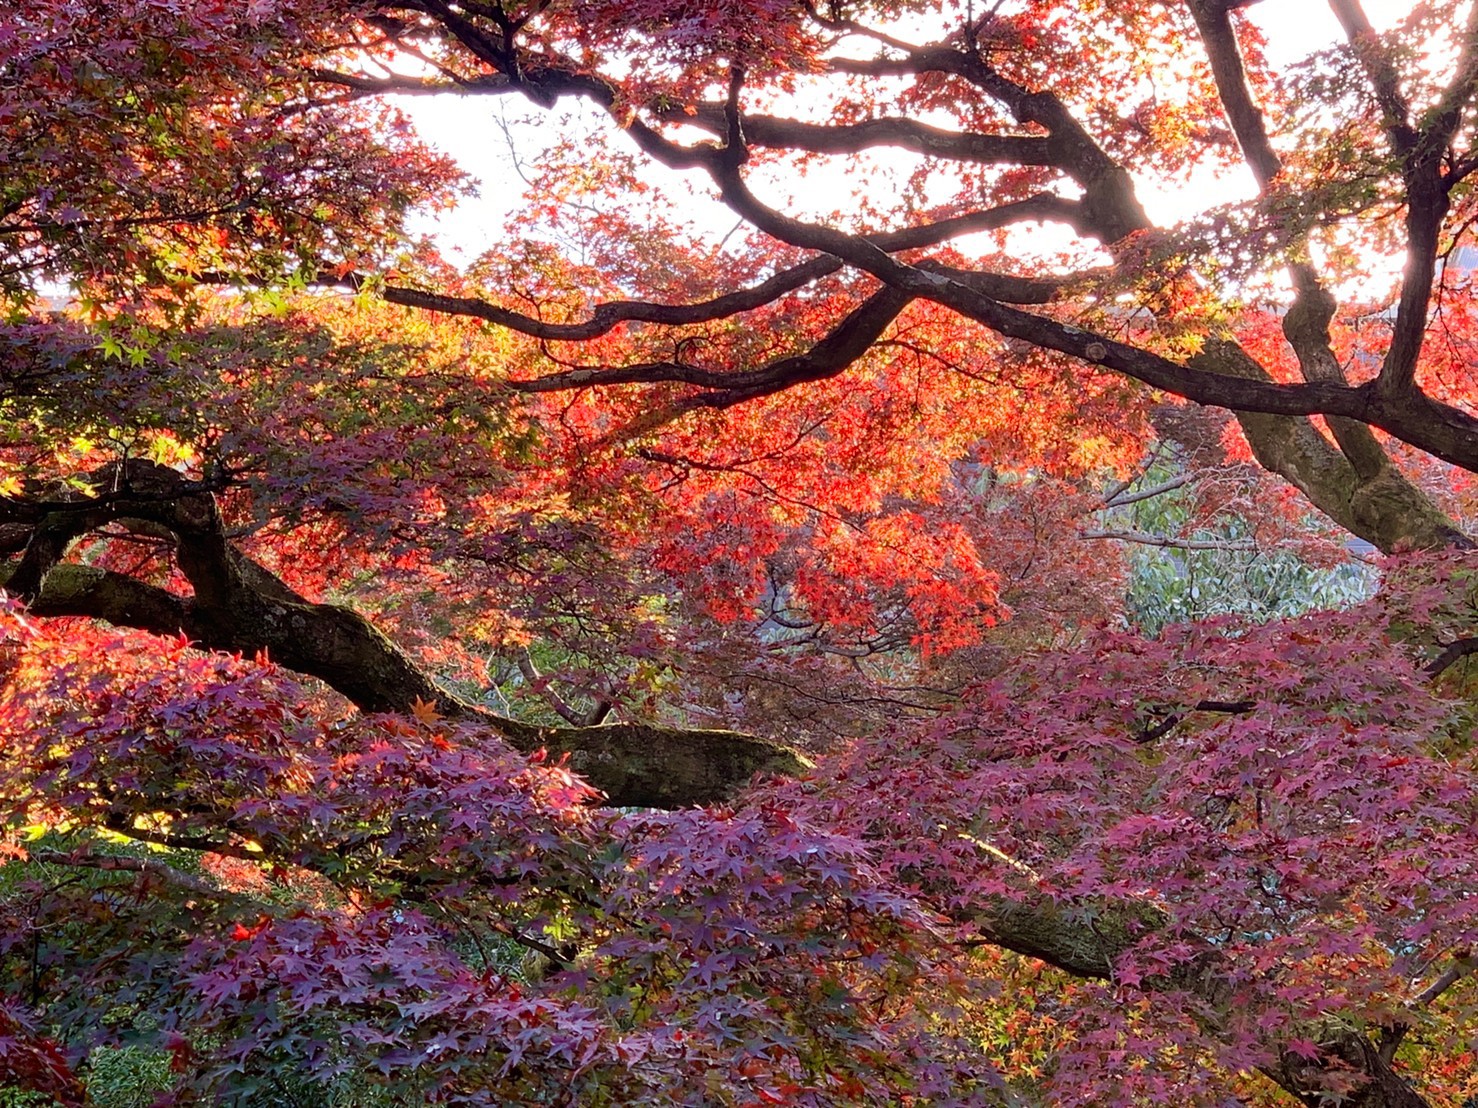 紅葉の庭園